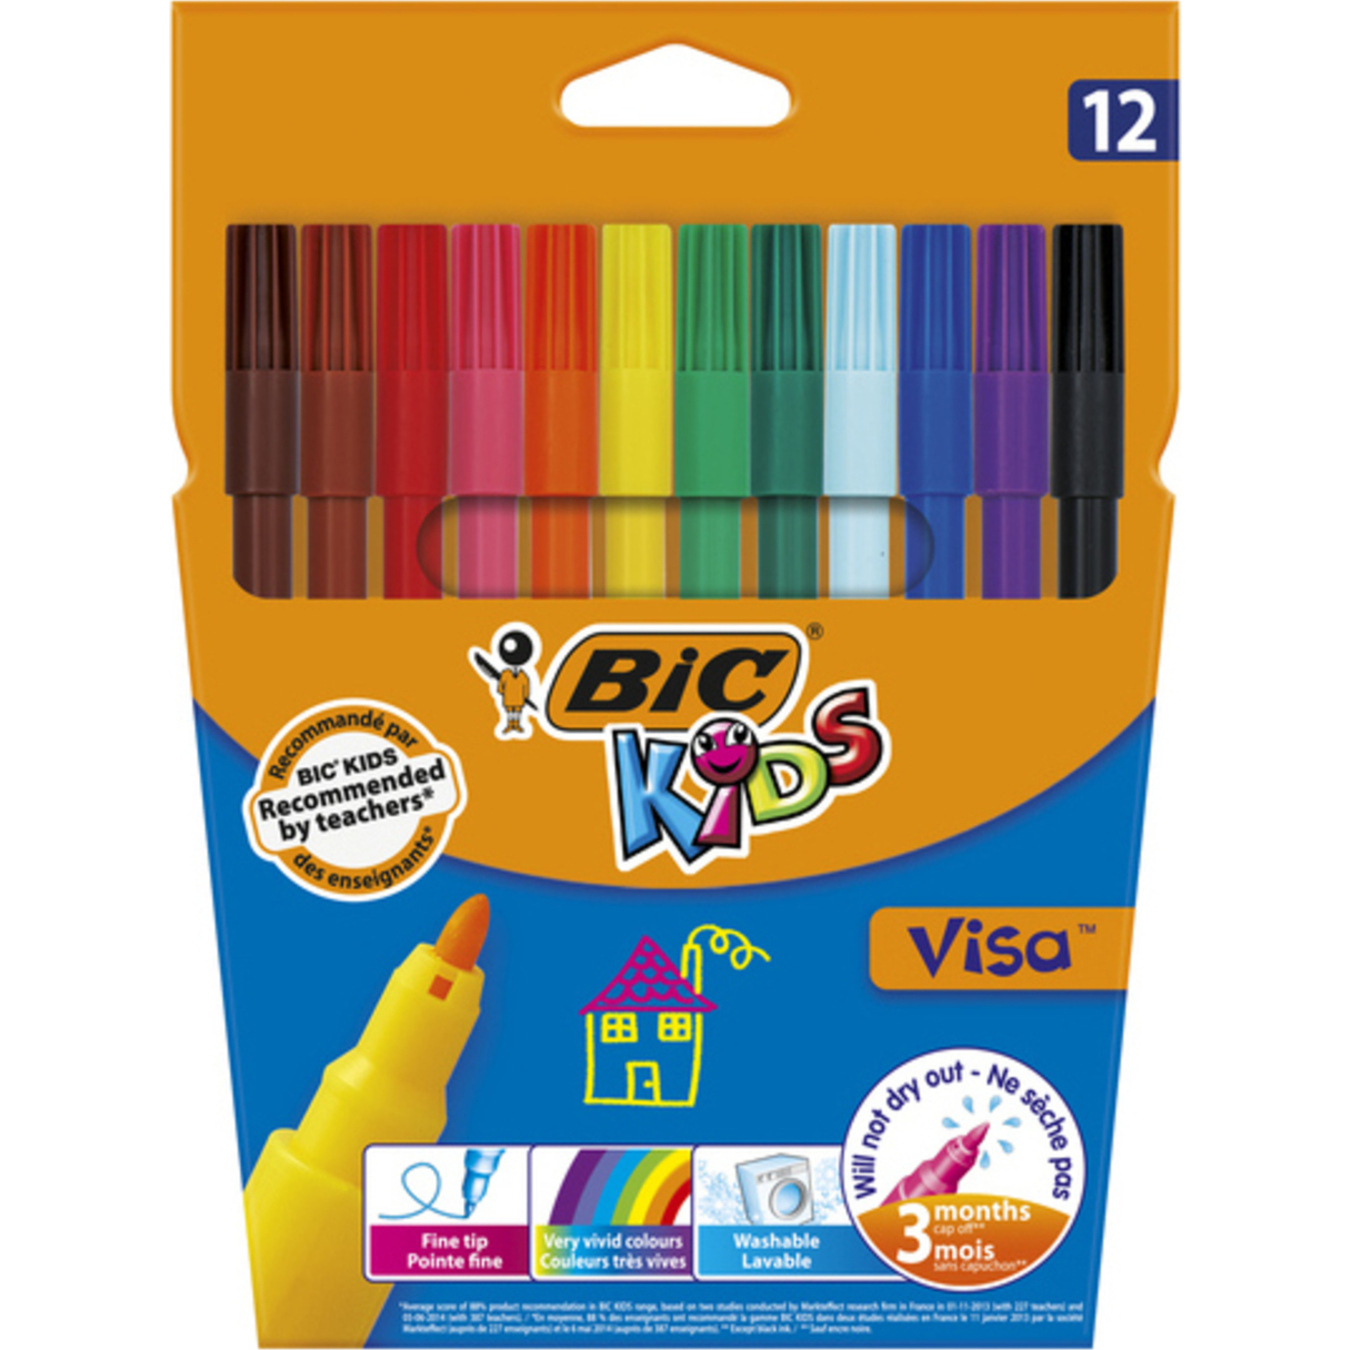 BIC 12 Kids Visa felt-tip pens are colored